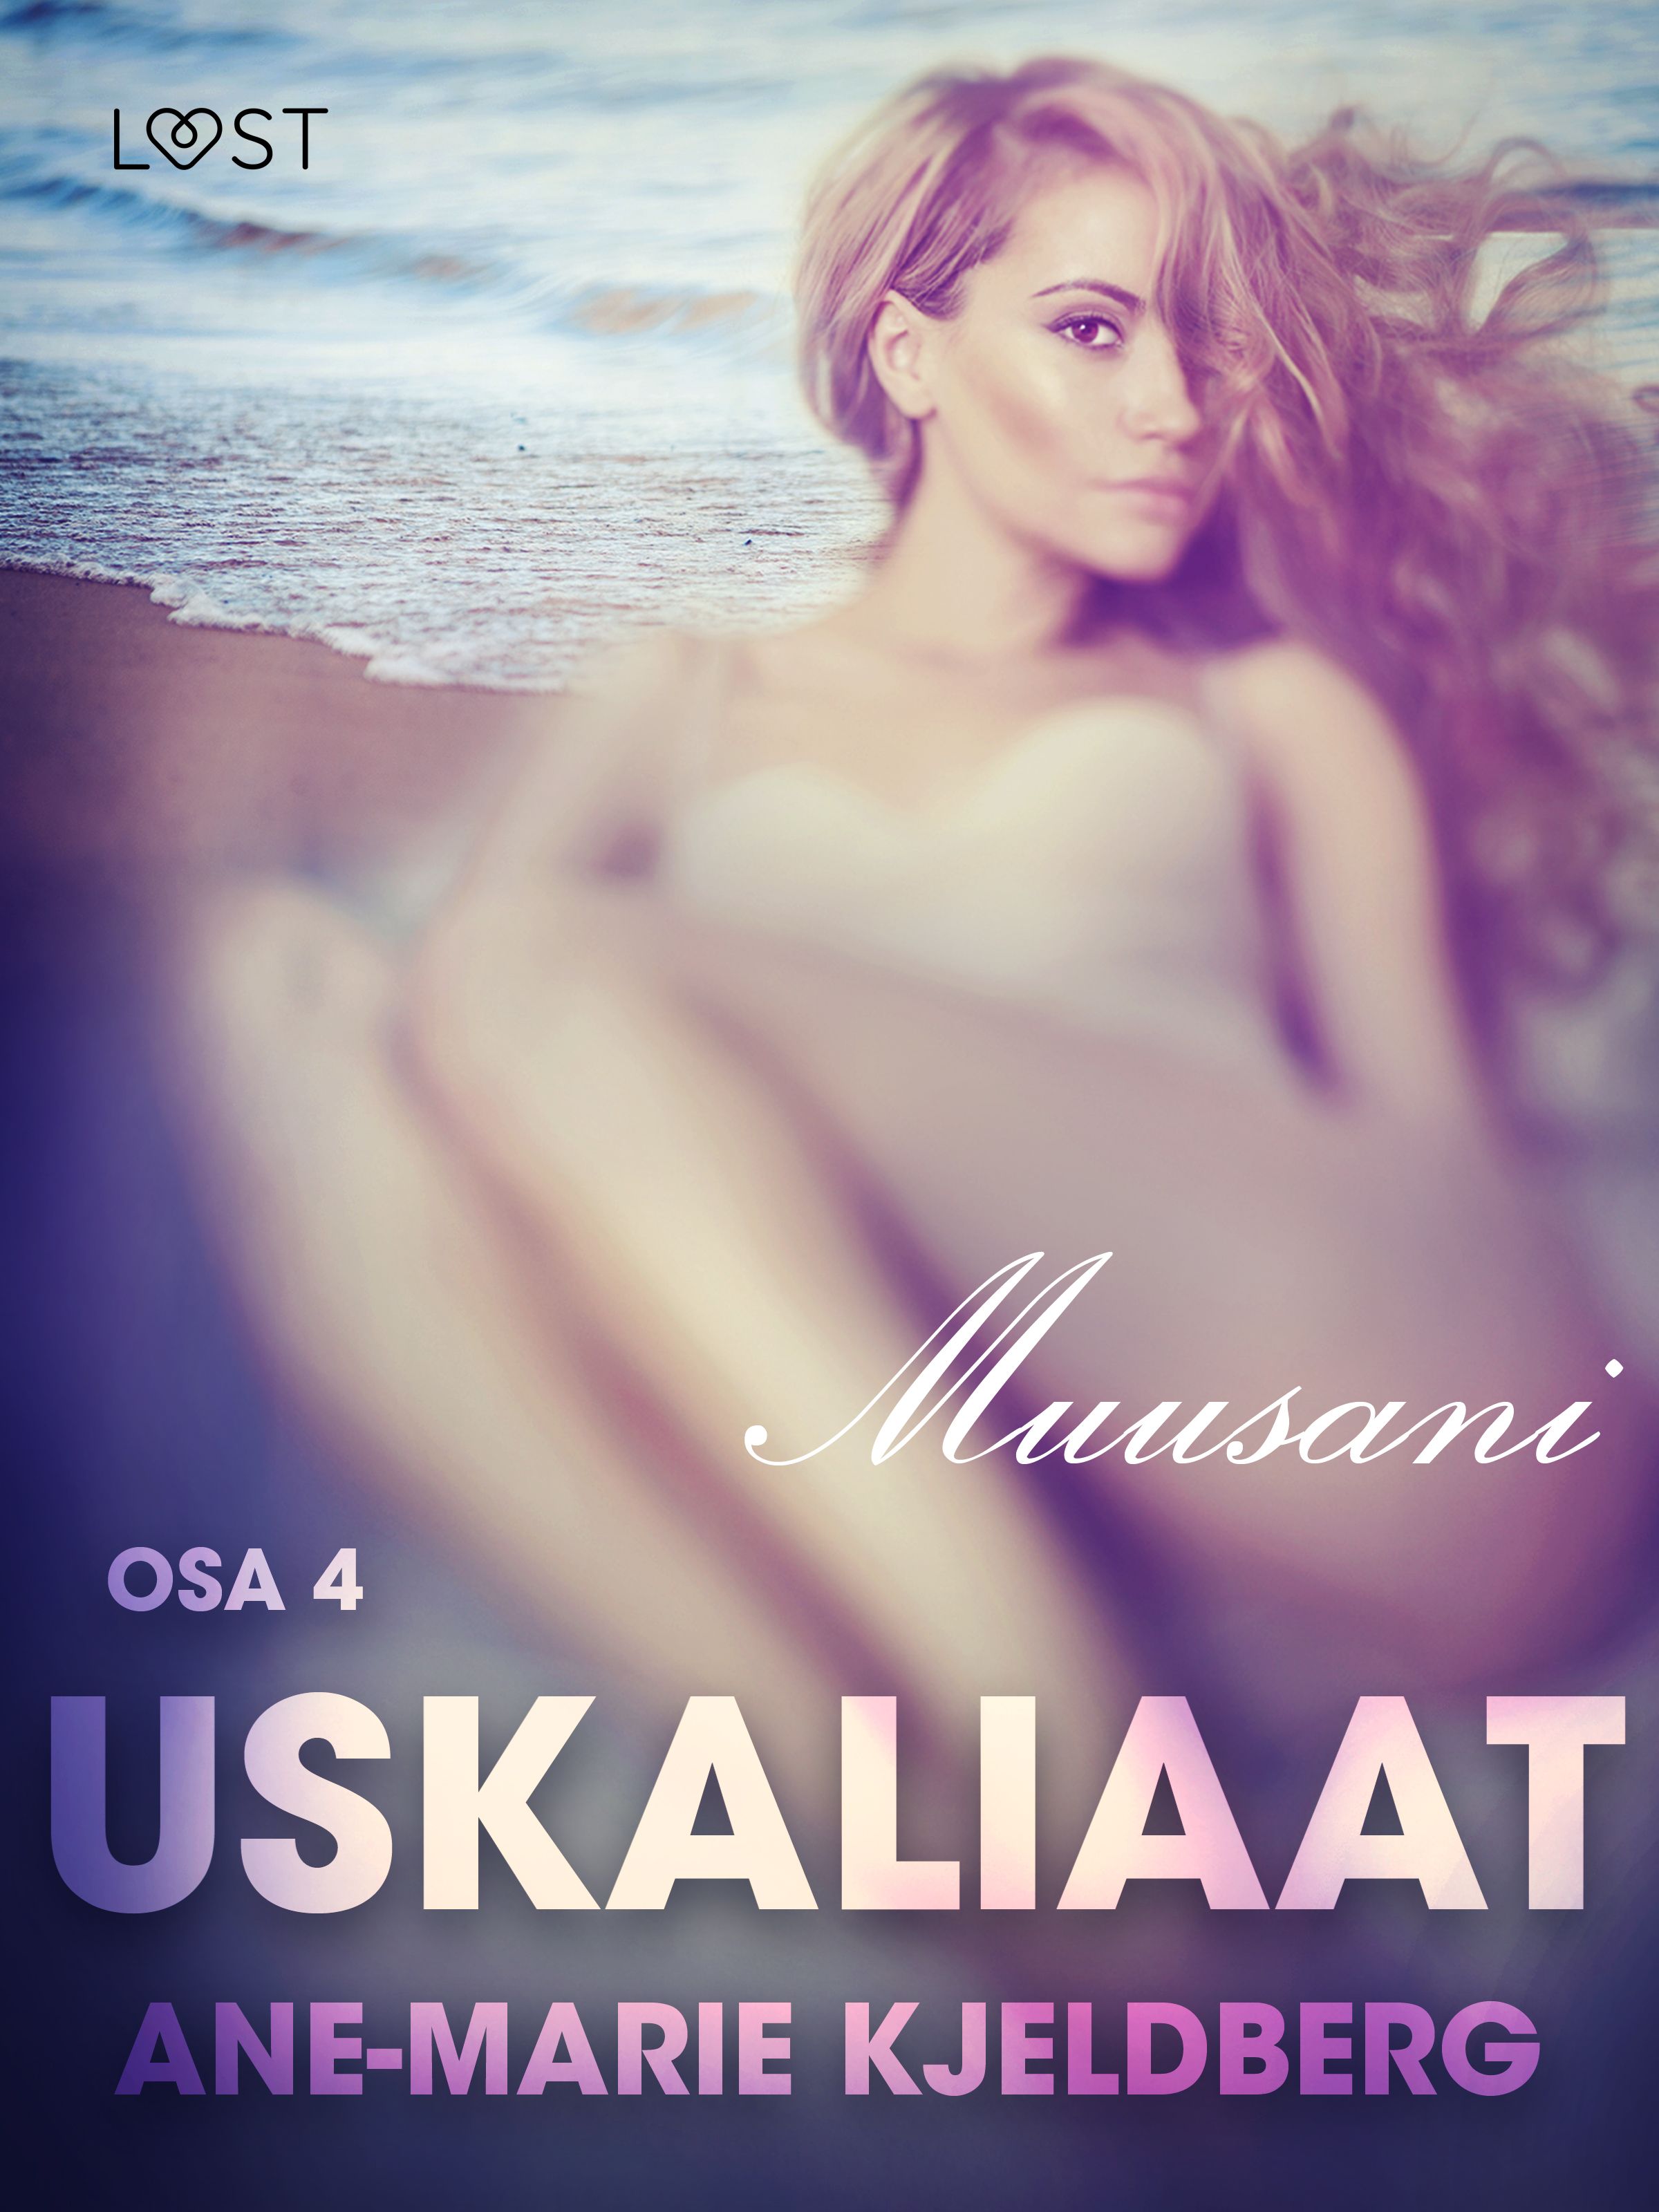 Uskaliaat 4: Muusani, e-bog af Ane-Marie Kjeldberg